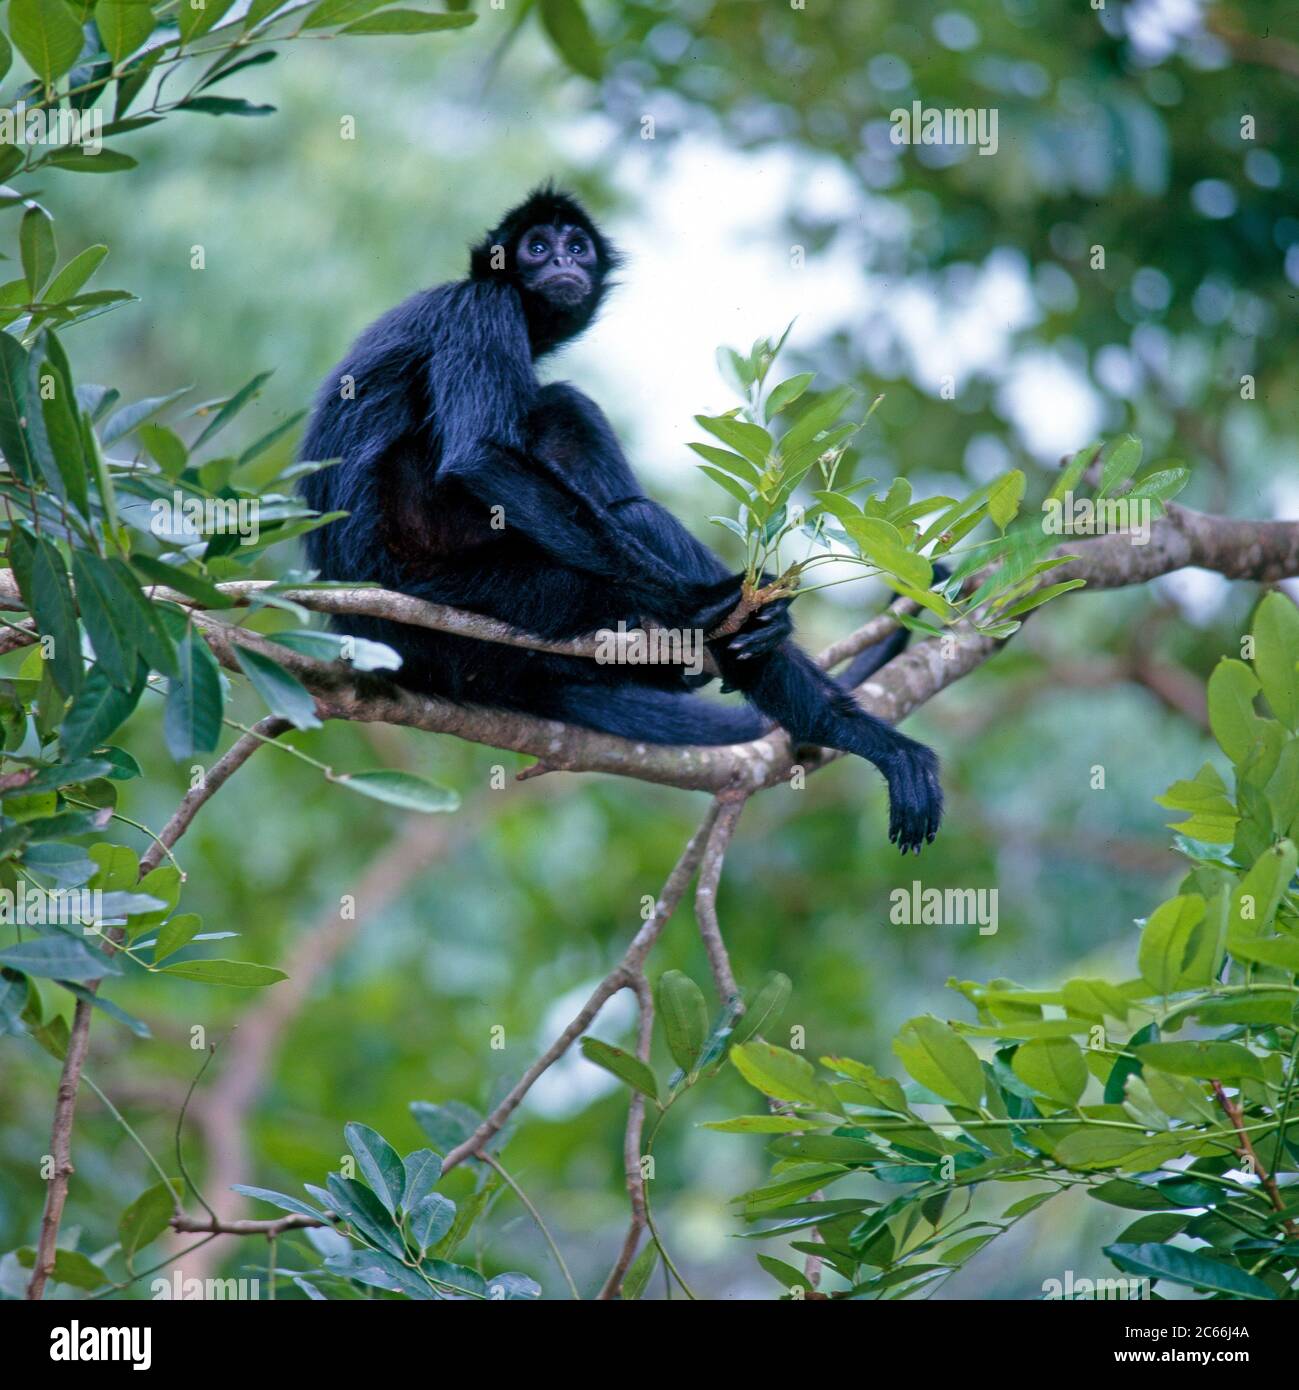 Singe Black Spider à face noire, également connu sous le nom de Koata, singe de la forêt amazonienne, assis sur les branches d'un arbre de la jungle Banque D'Images